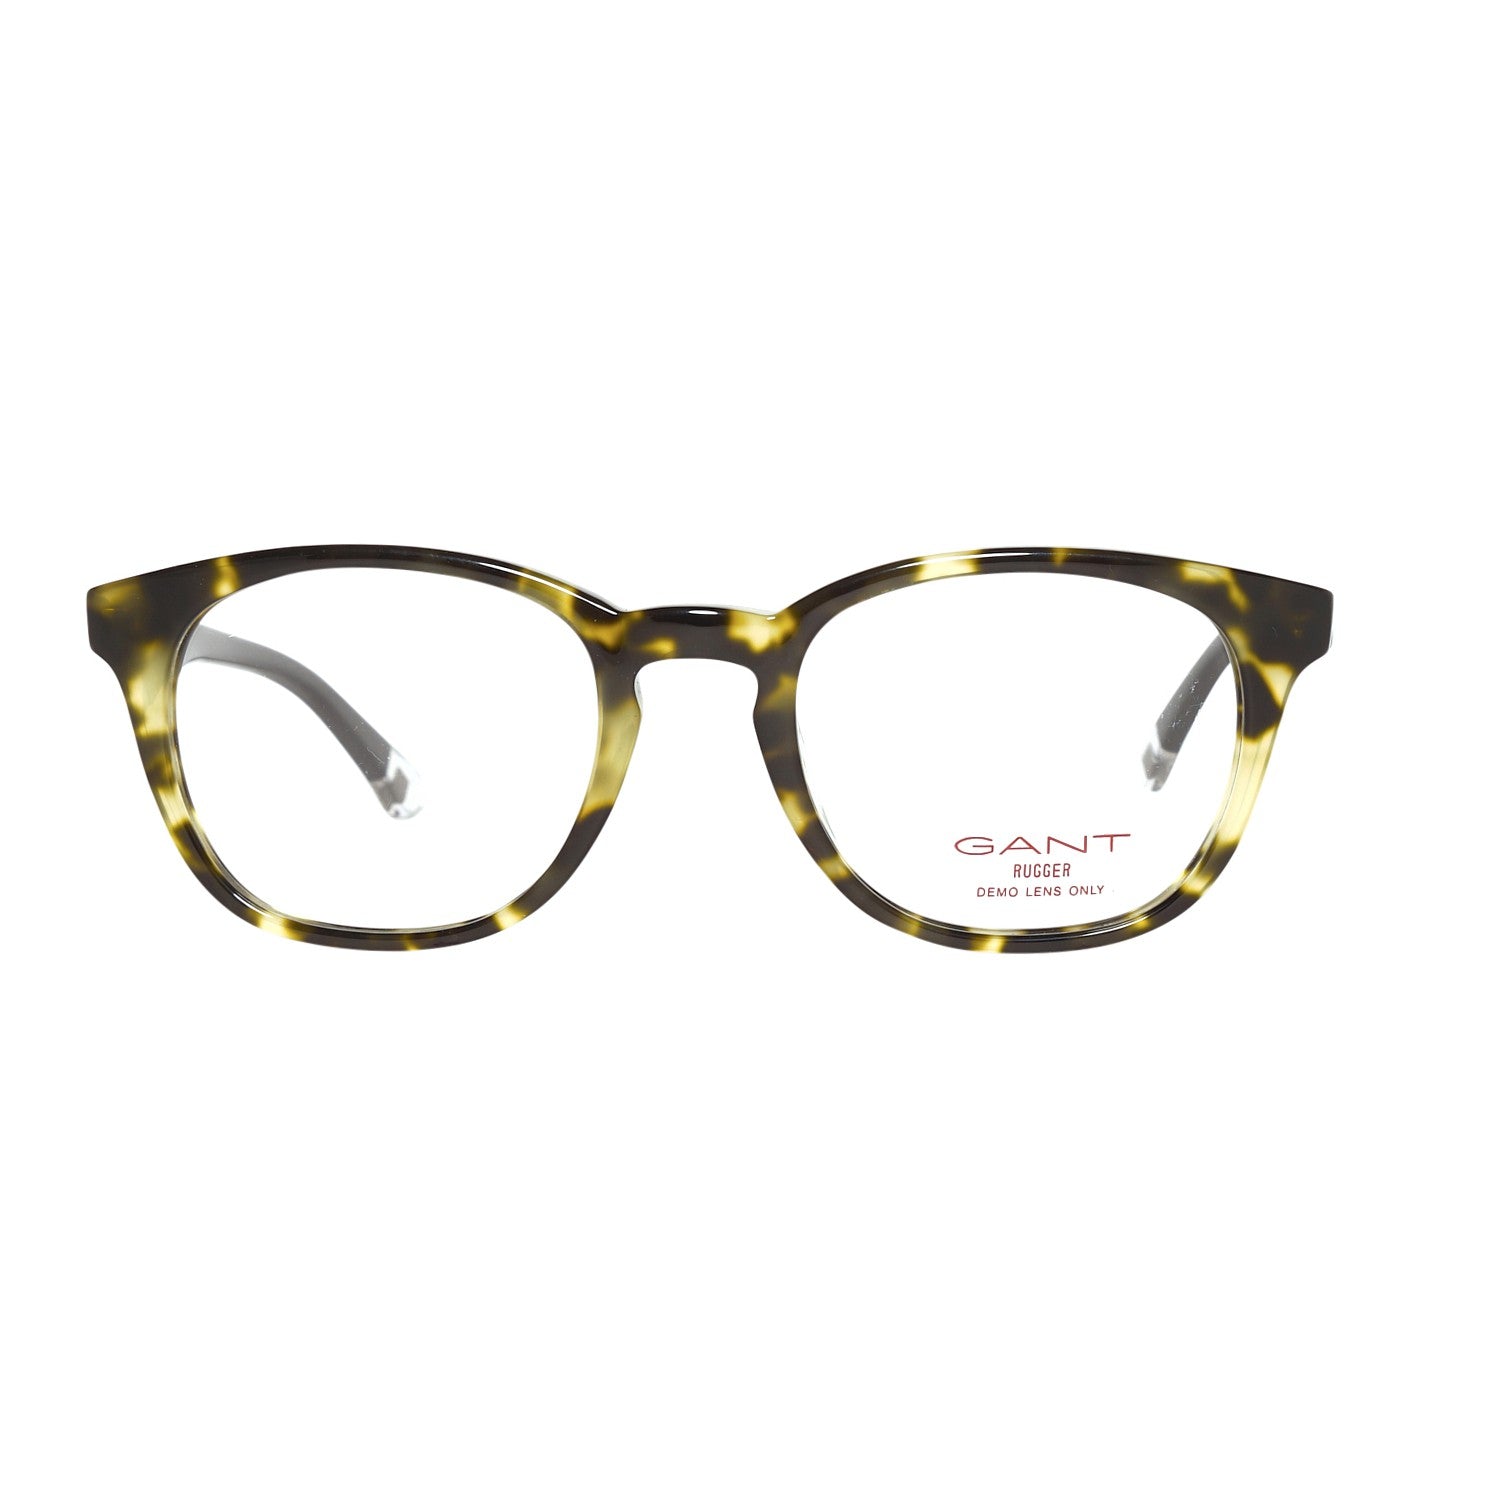 Gant Frames Gant Glasses Frames GRA088 K83 47 | GR RUFUS LTO 47 Eyeglasses Eyewear UK USA Australia 